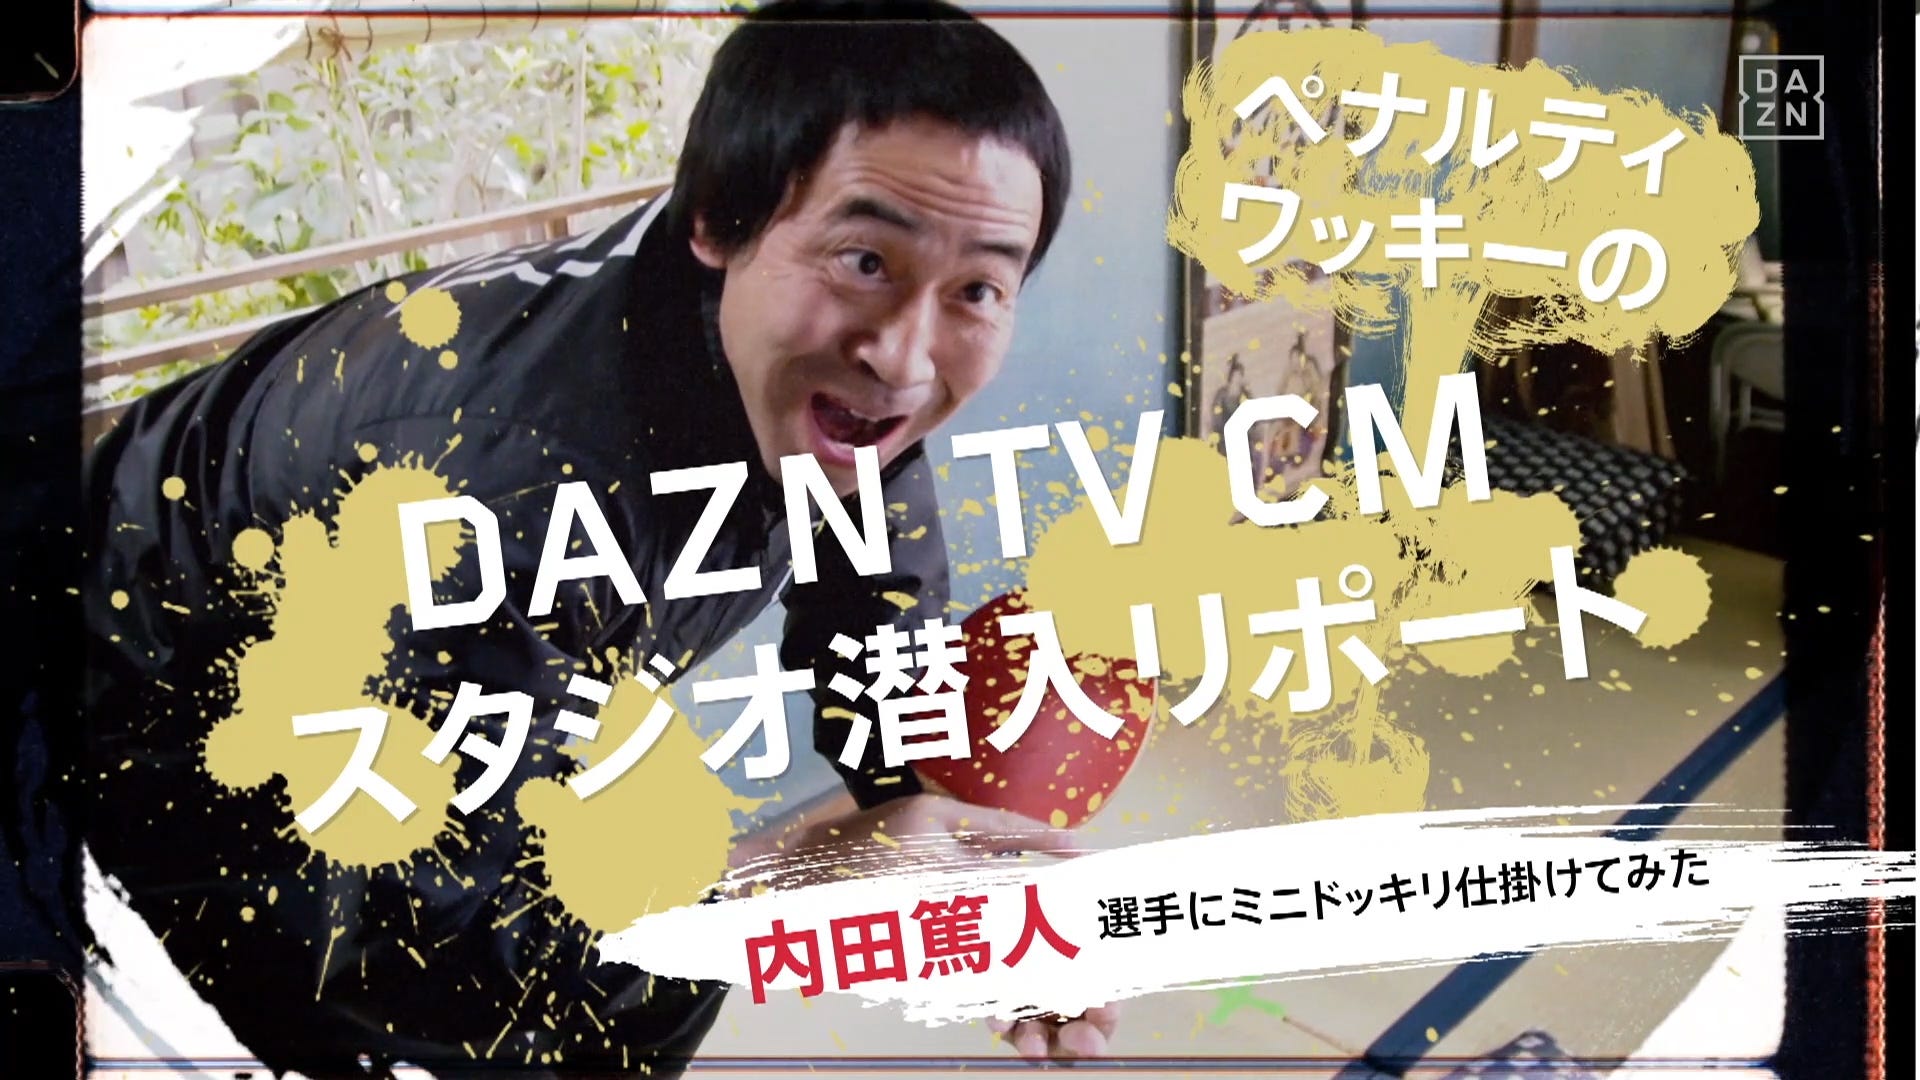 動画 ワッキーが内田篤人と槙野智章にミニドッキリ Daznのtvcmに潜入リポート Goal Com 日本